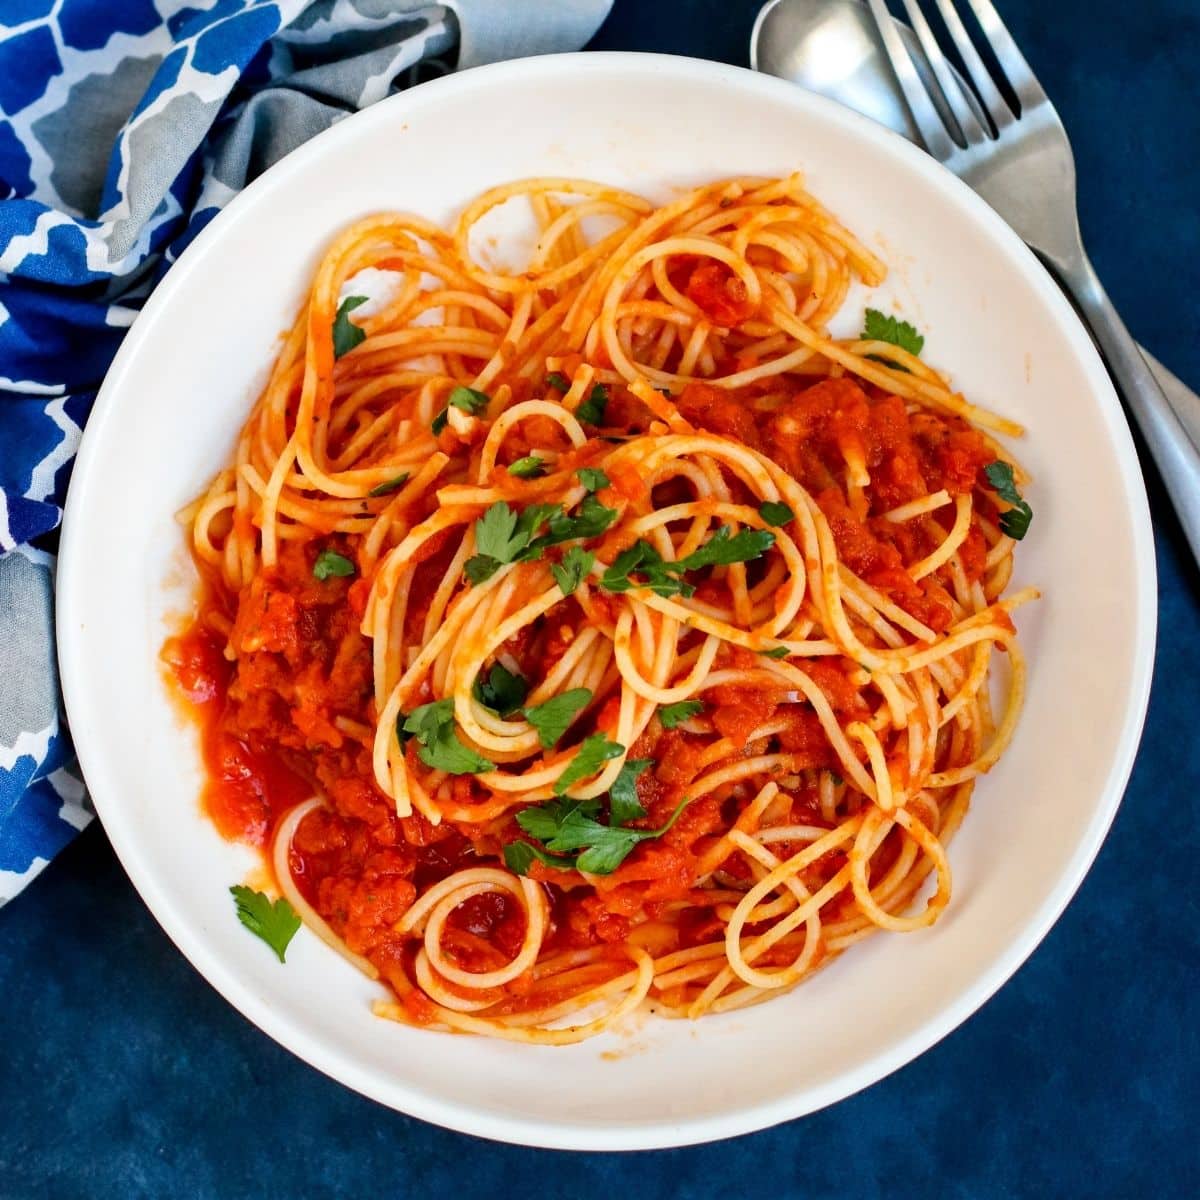 Cuenco de espagueti con calabaza marinara adornado con perejil fresco junto a un tenedor y una servilleta azul estampada.